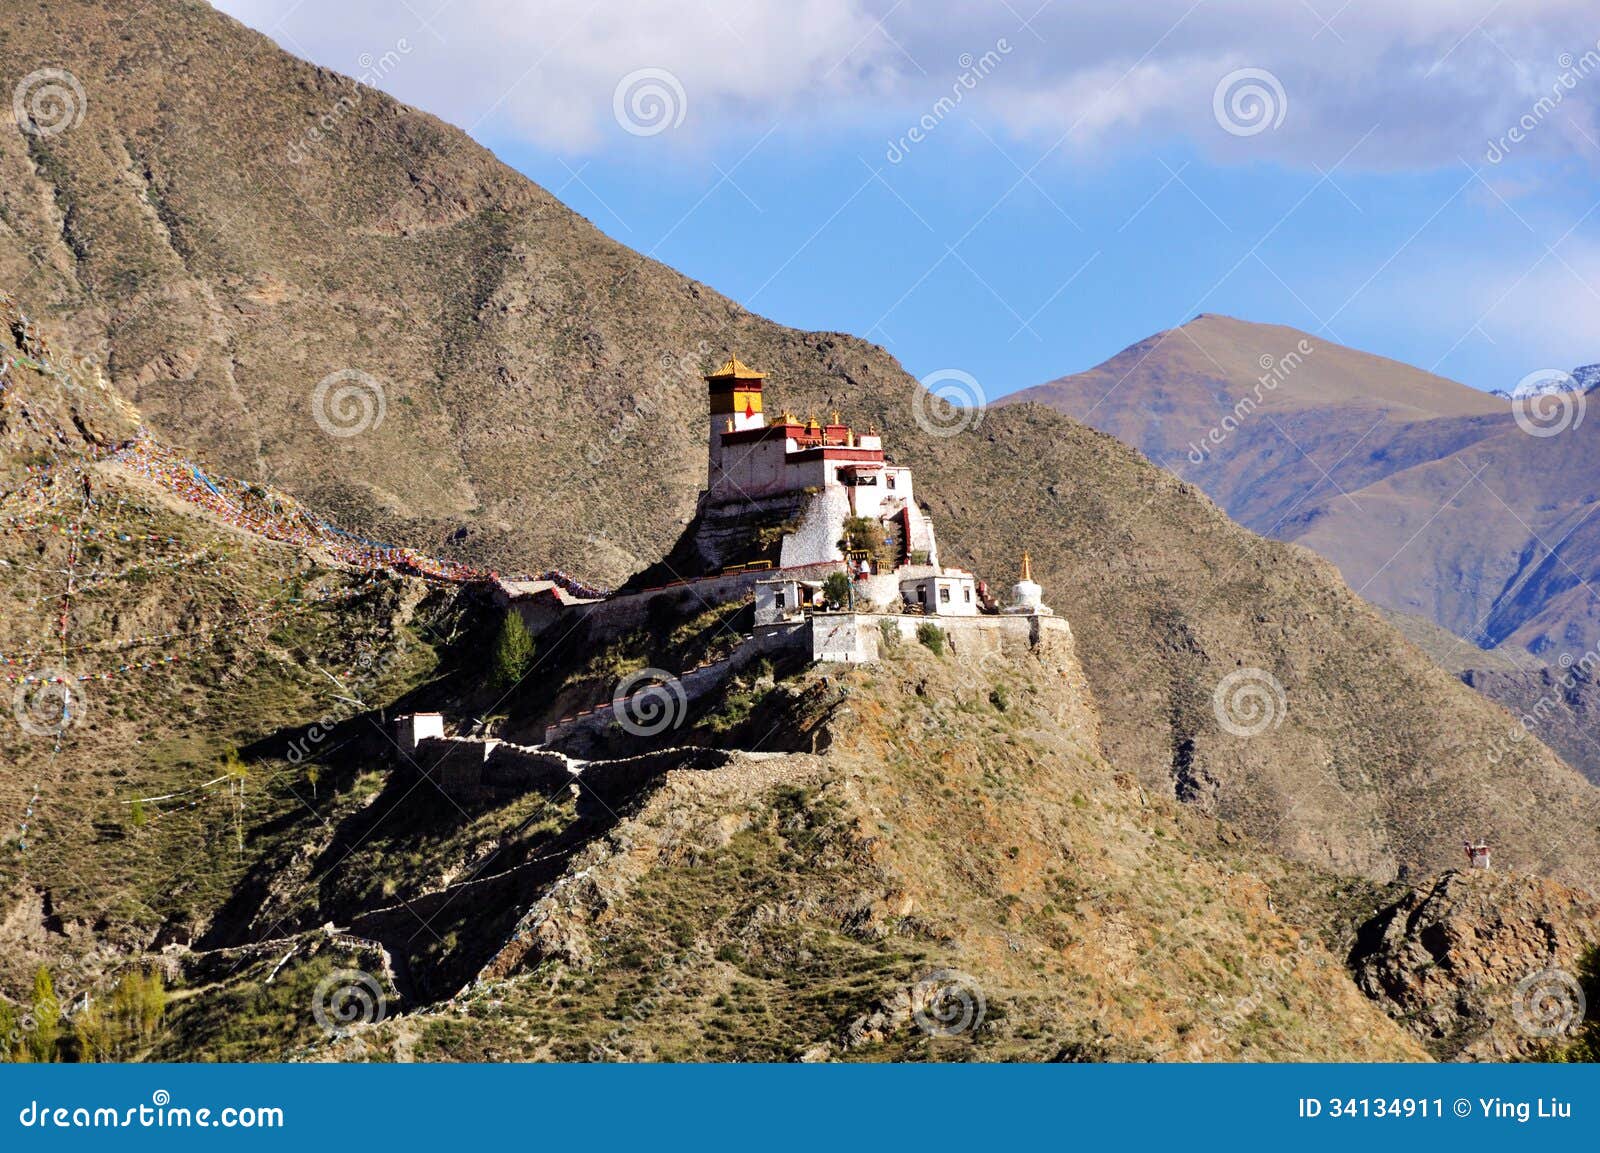 landscape of yumbulagang palace, tibet